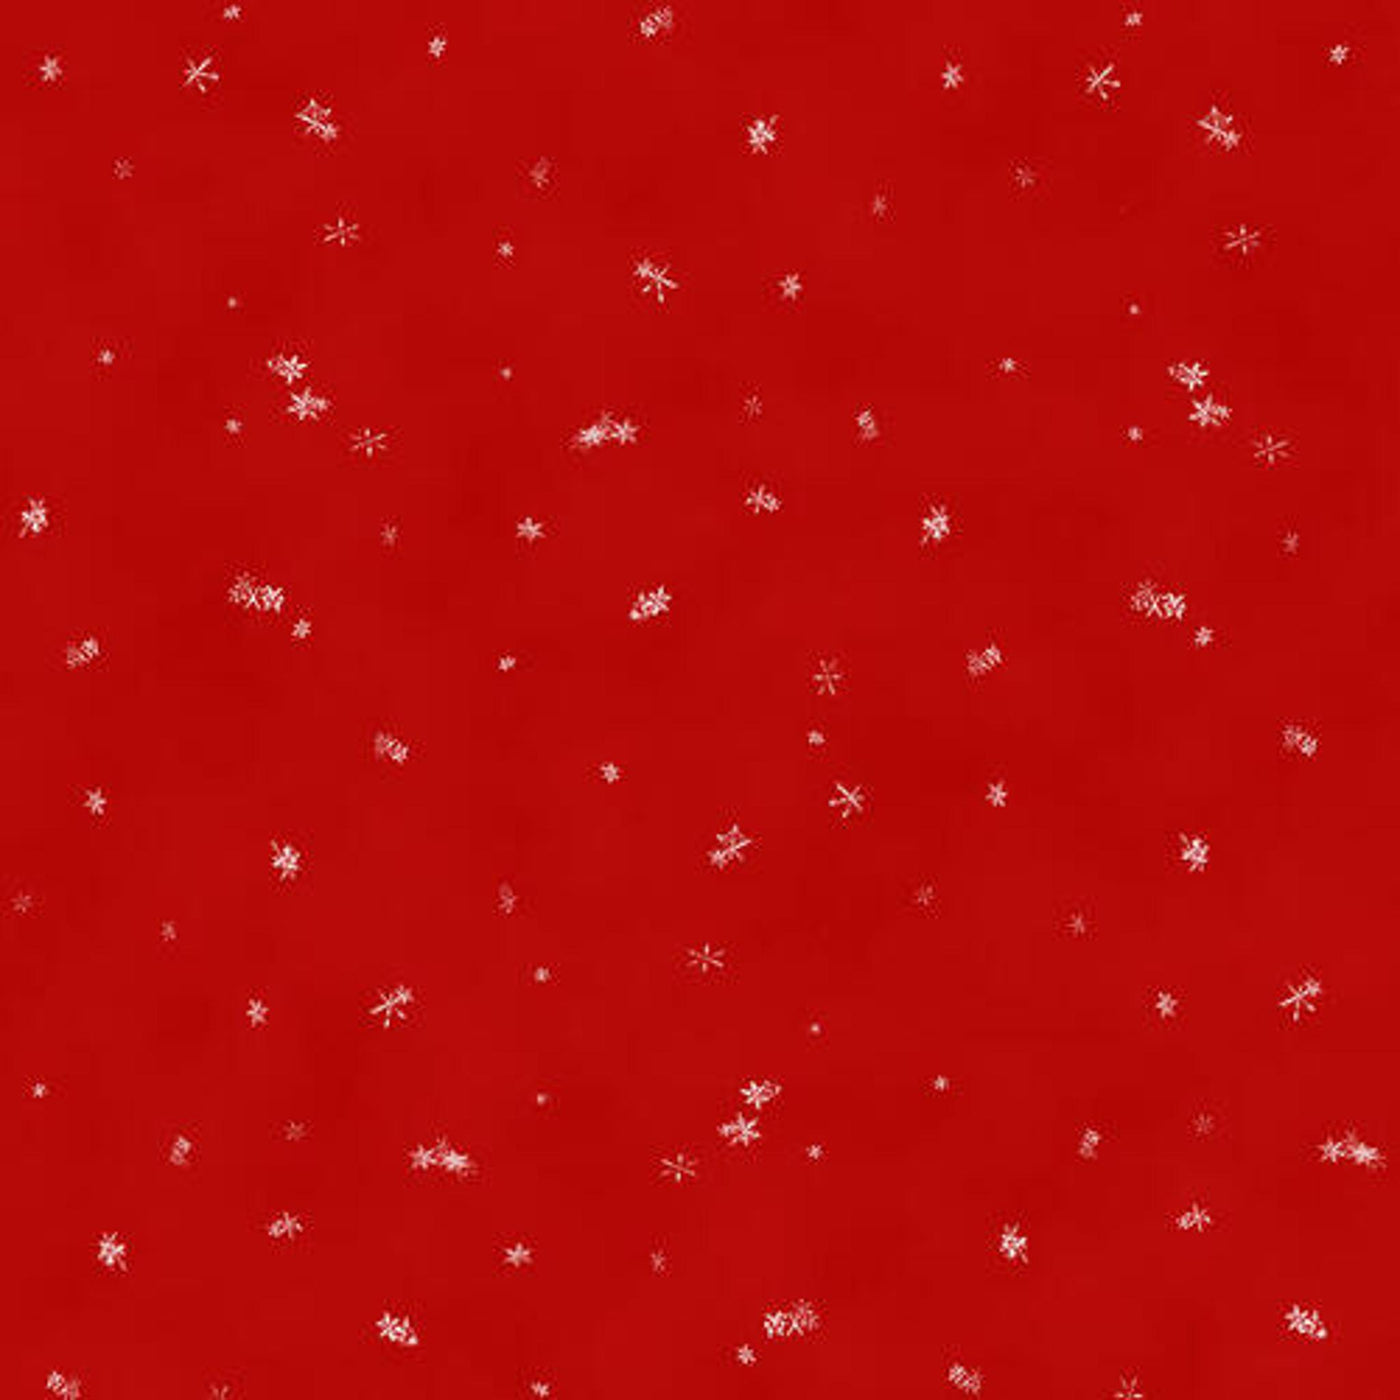 Rødt med snøkrystaller4790-721